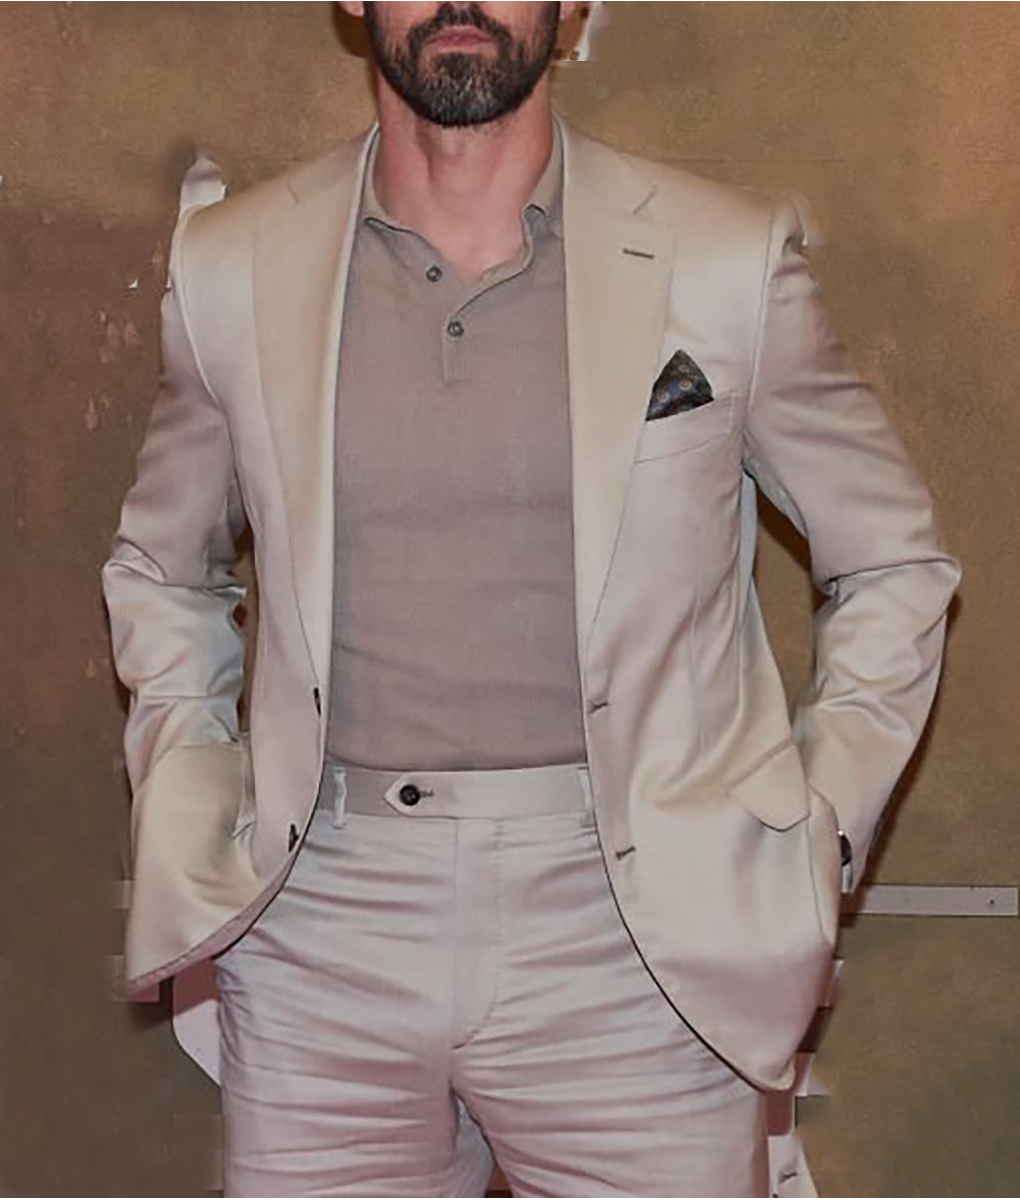 Milo Ventimiglia Cream Suit (5)